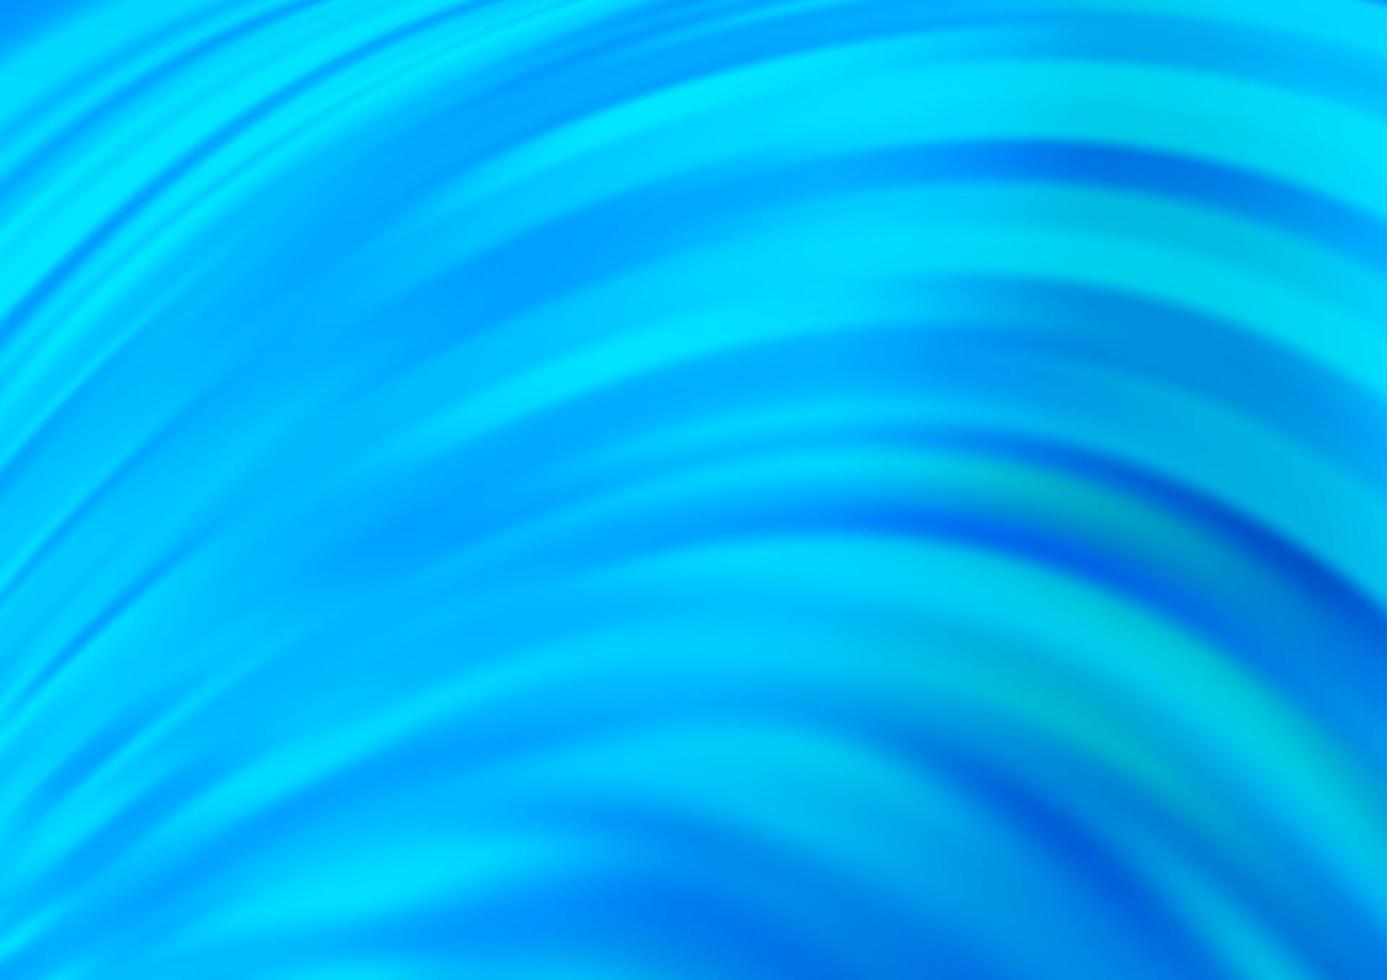 sfondo vettoriale azzurro con linee piegate.